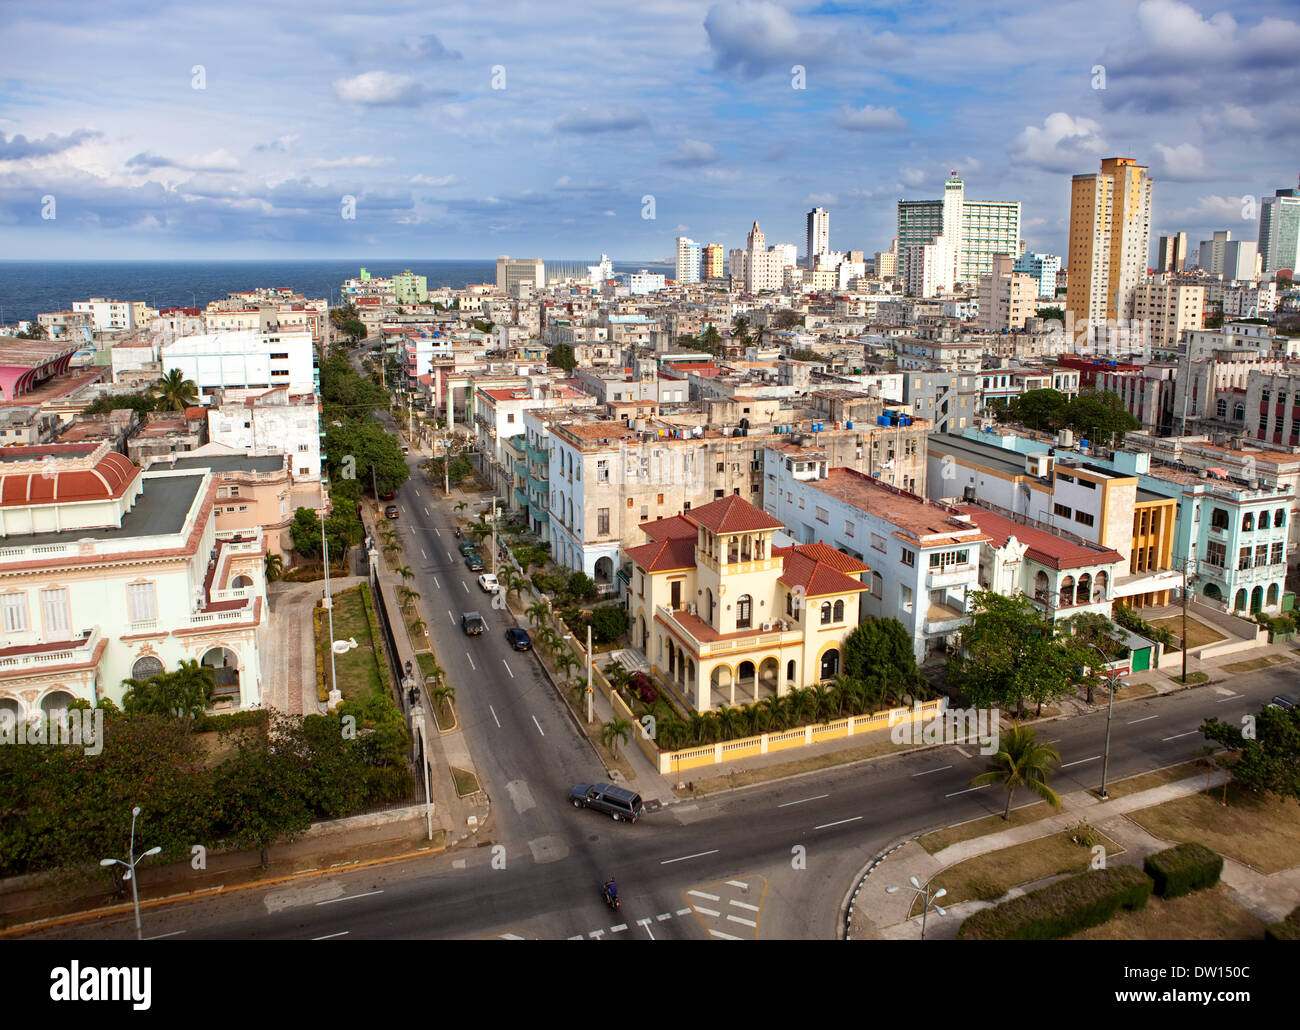 Cuba. Old Havana. Top view. Stock Photo